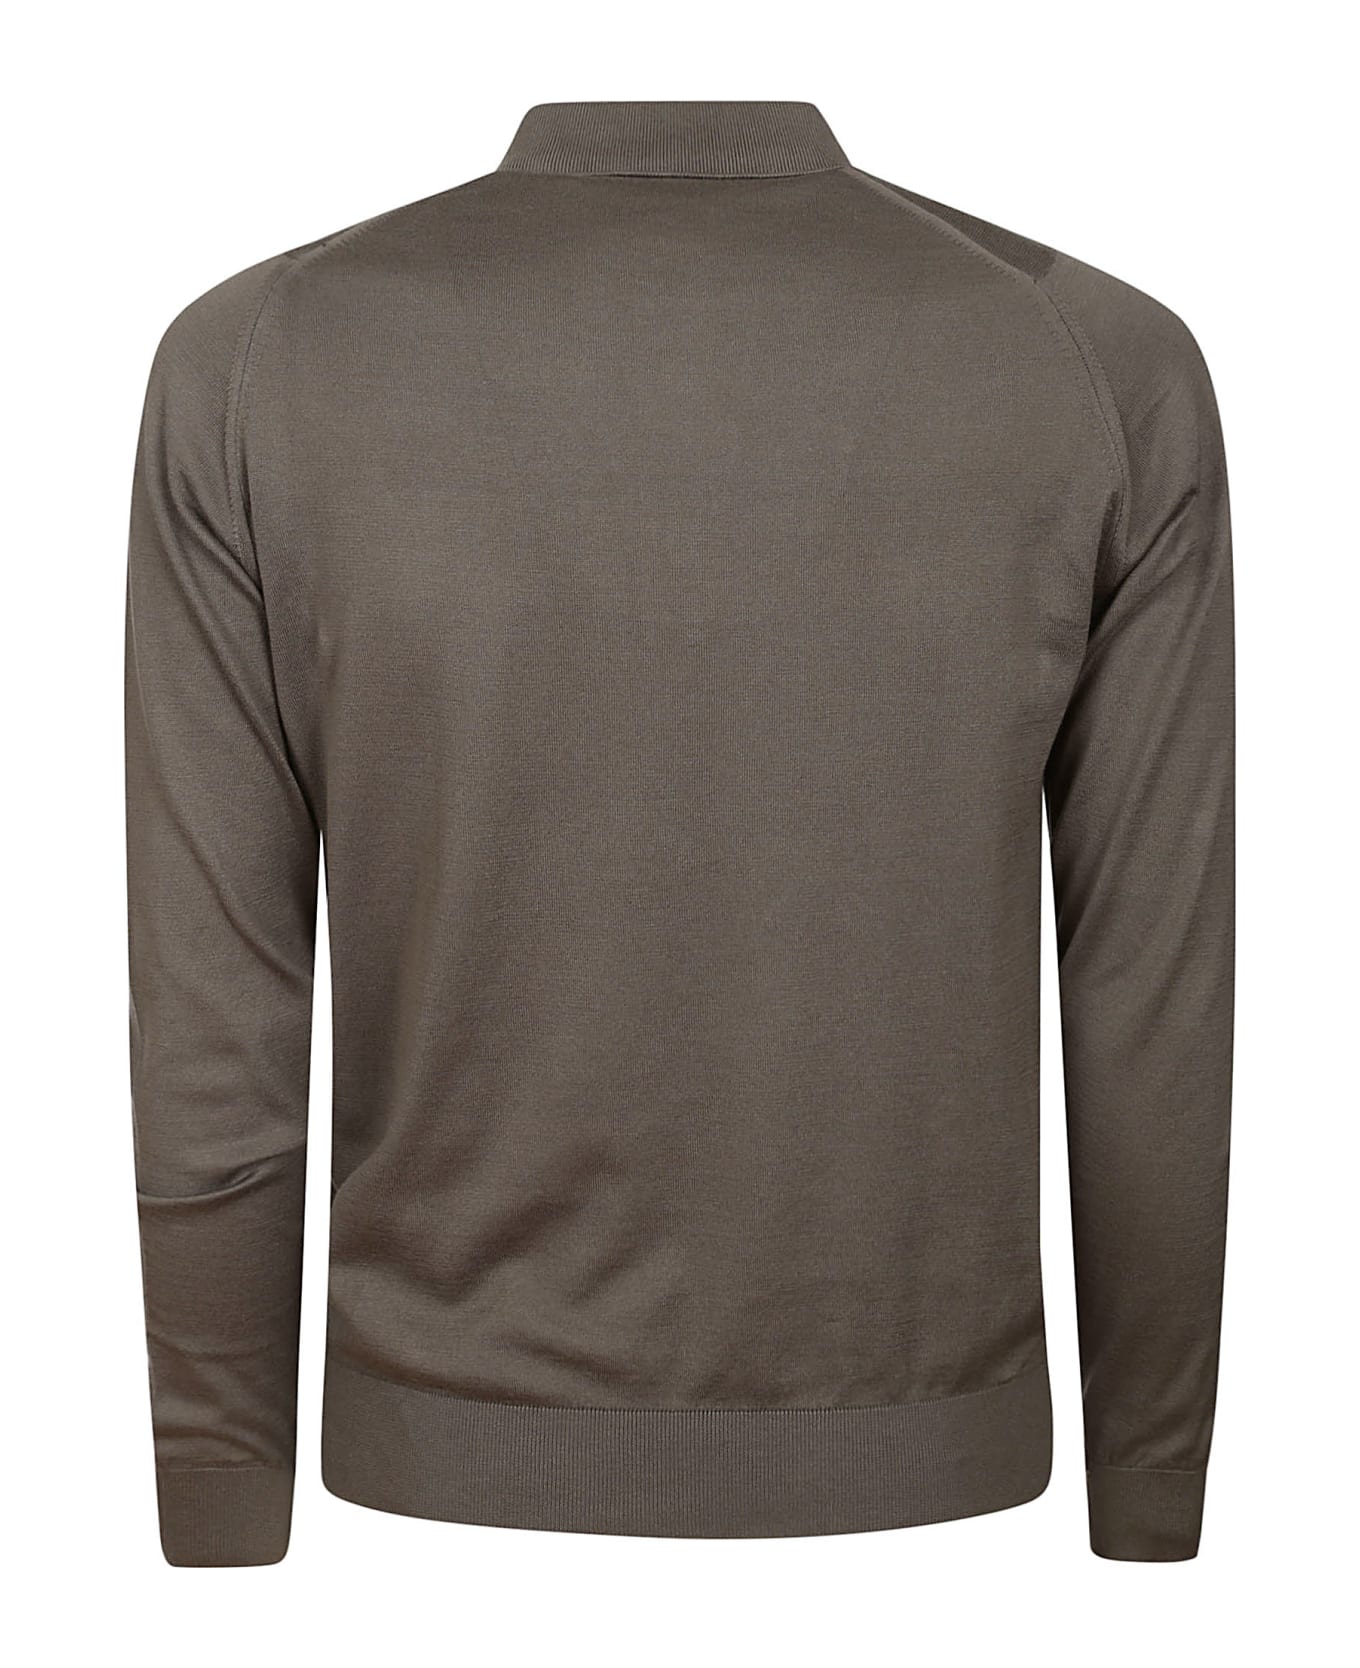 John Smedley Bradwell Shirt Ls - Beige Musk